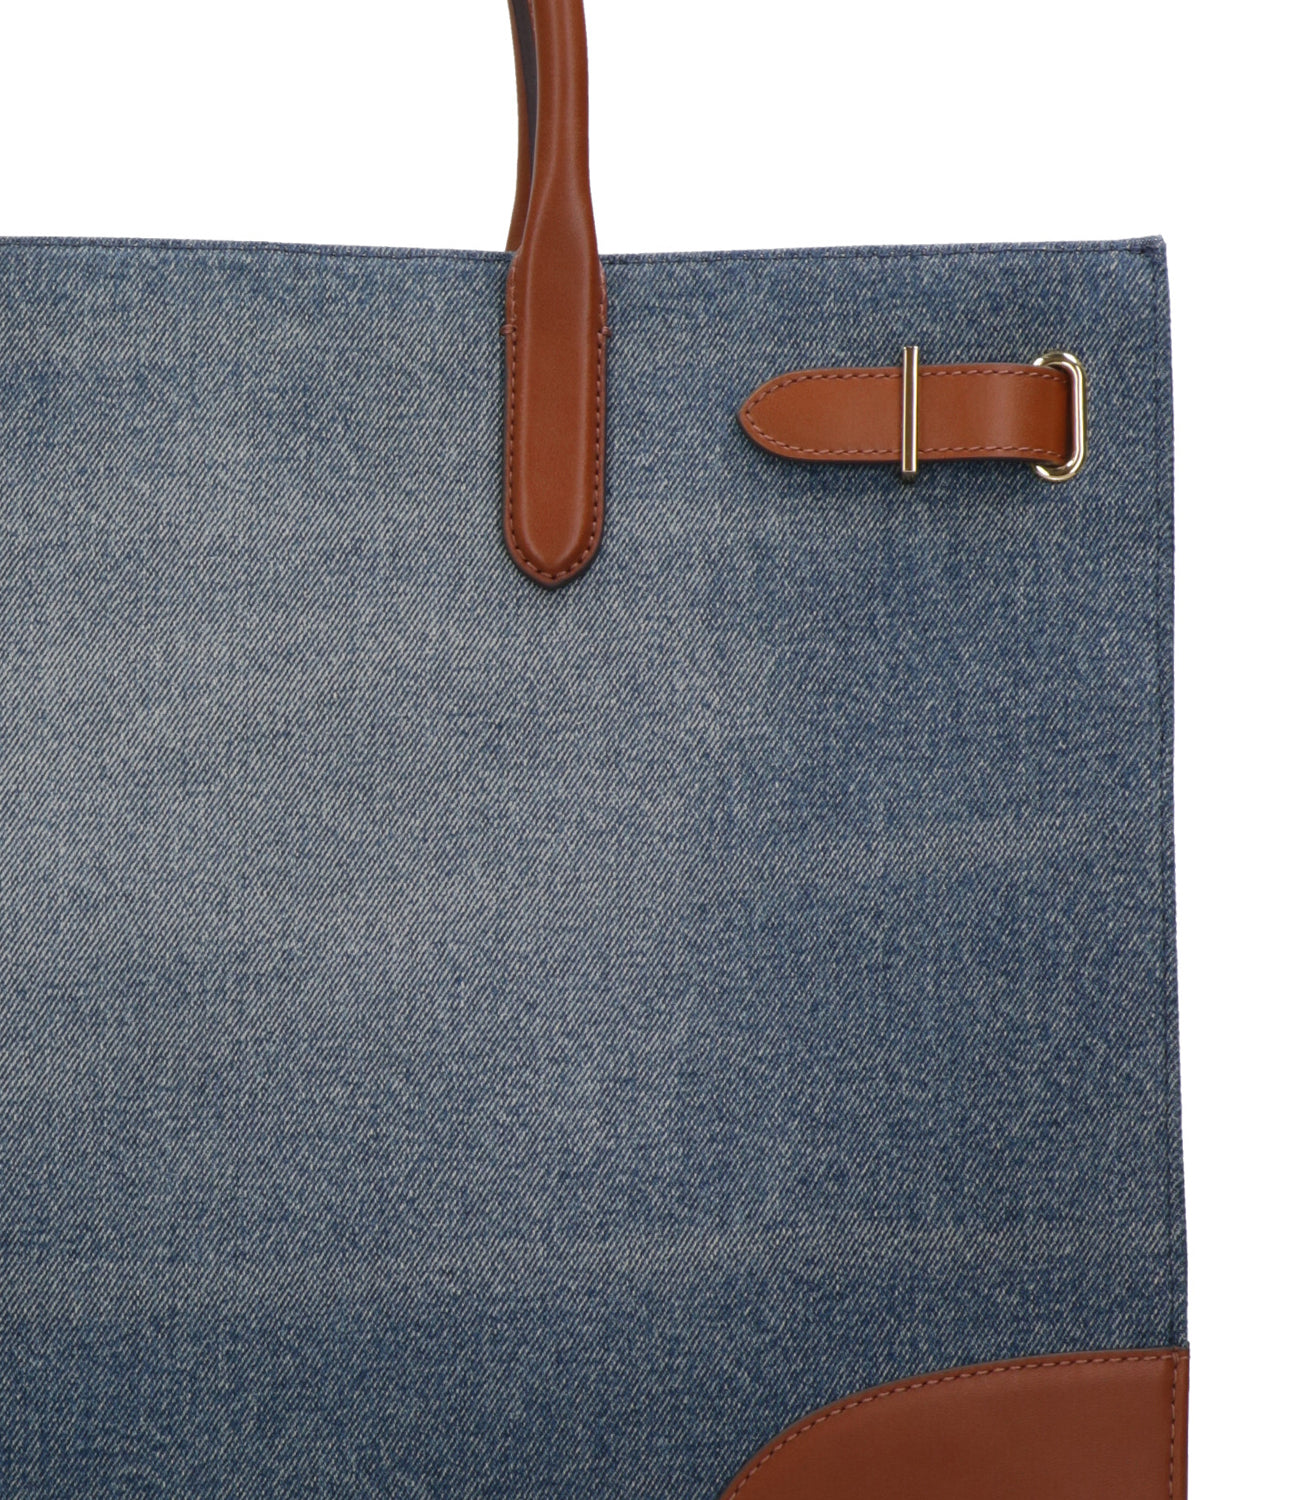 Lauren Ralph Lauren | Denim and Leather Tote Bags